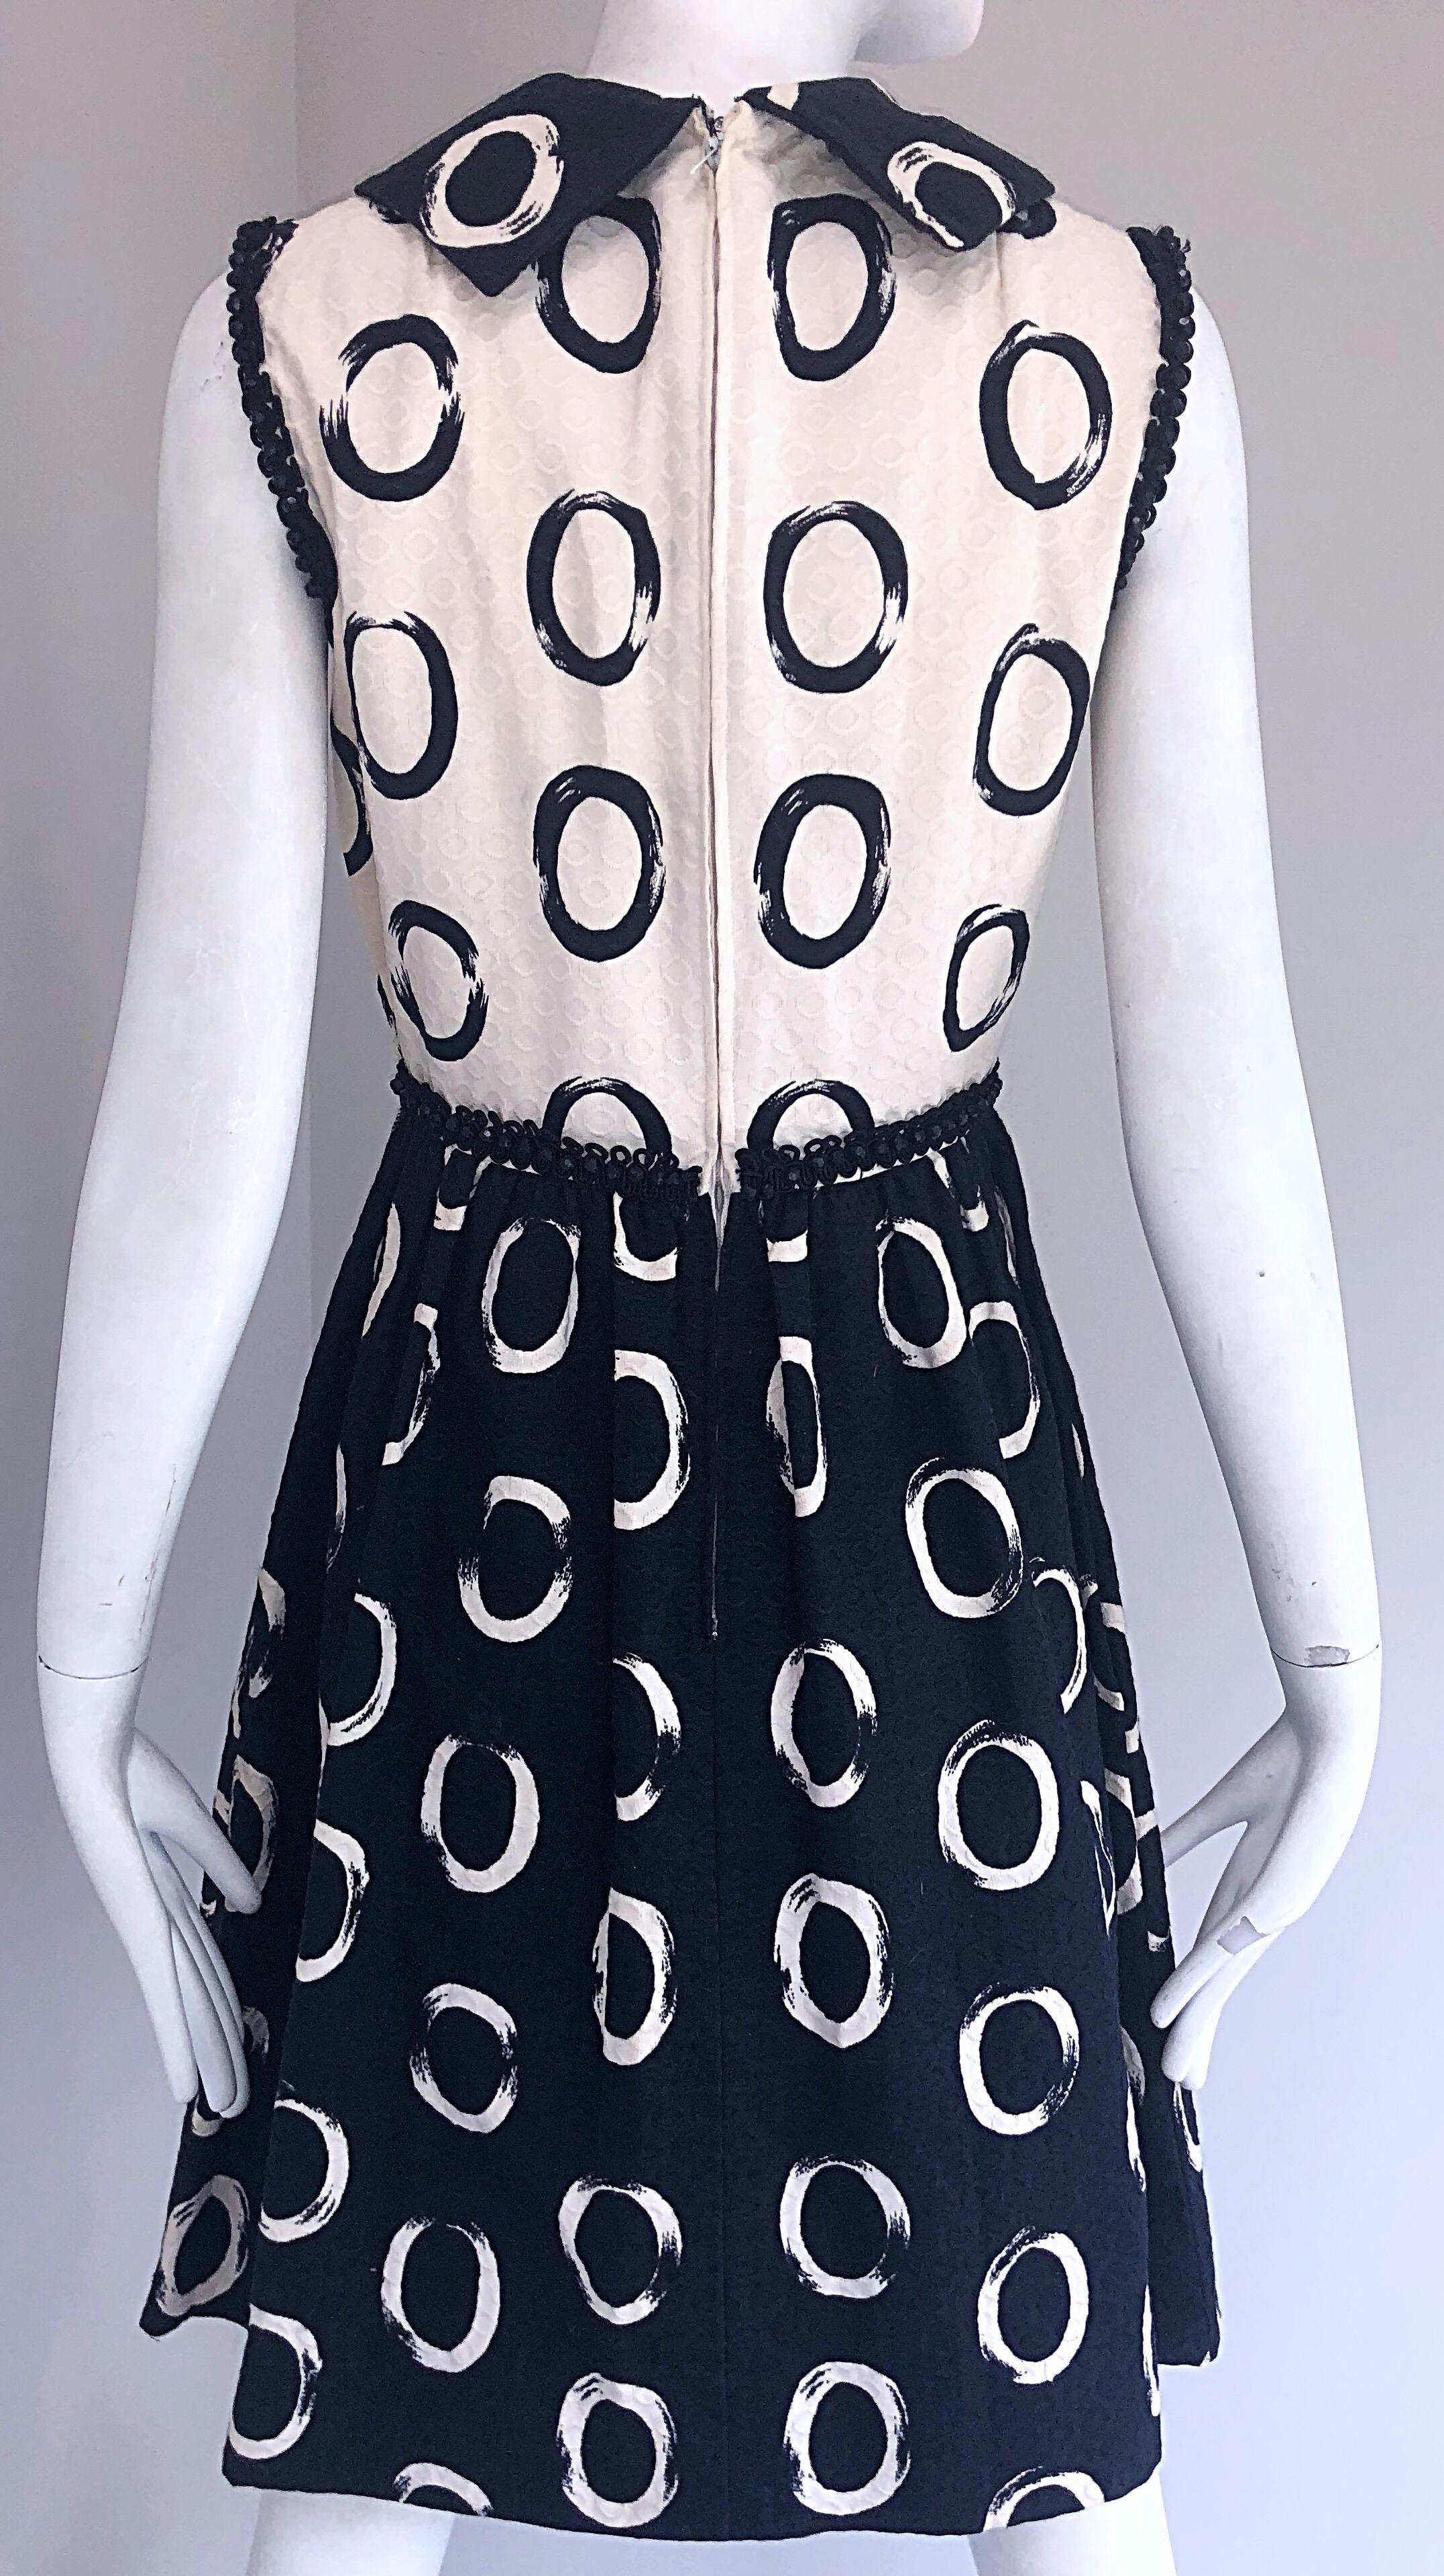 Women's Oscar de la Renta 1960s Black and White Pique Cotton Beaded 60s A - Line Dress